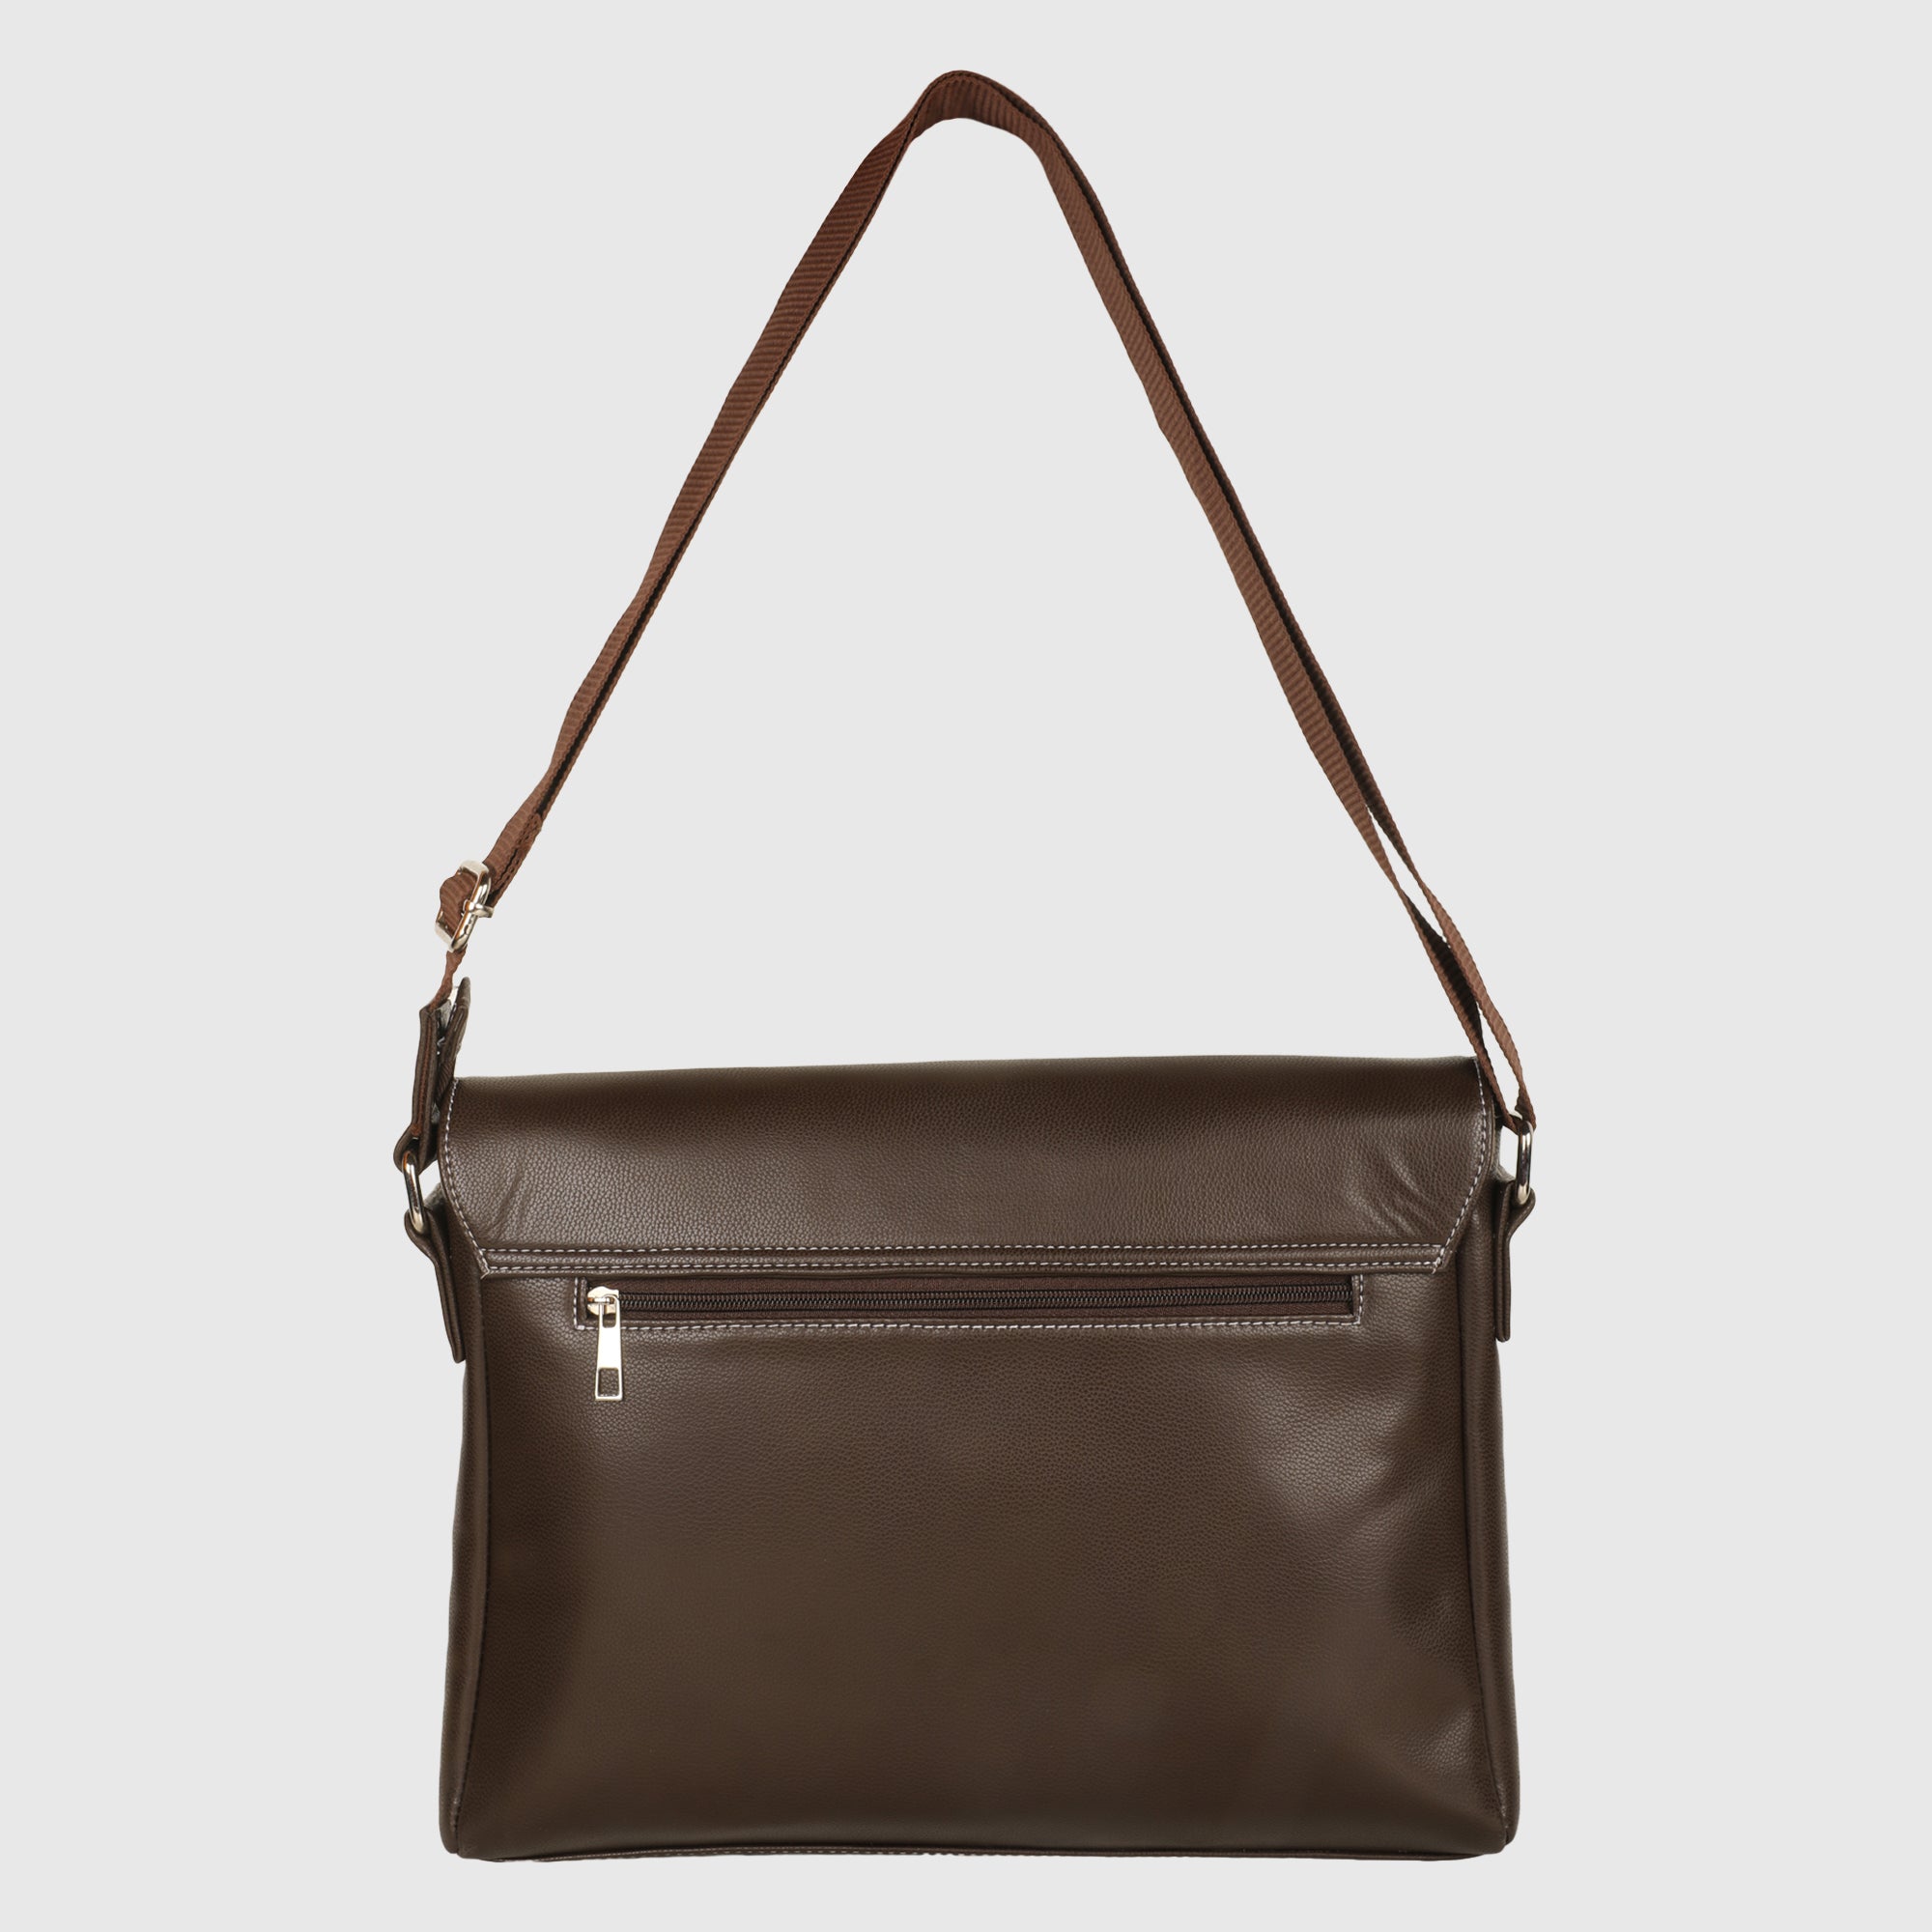 Brown Men's Vegan Leather Messenger Bag with Adjustable Shoulder Strap